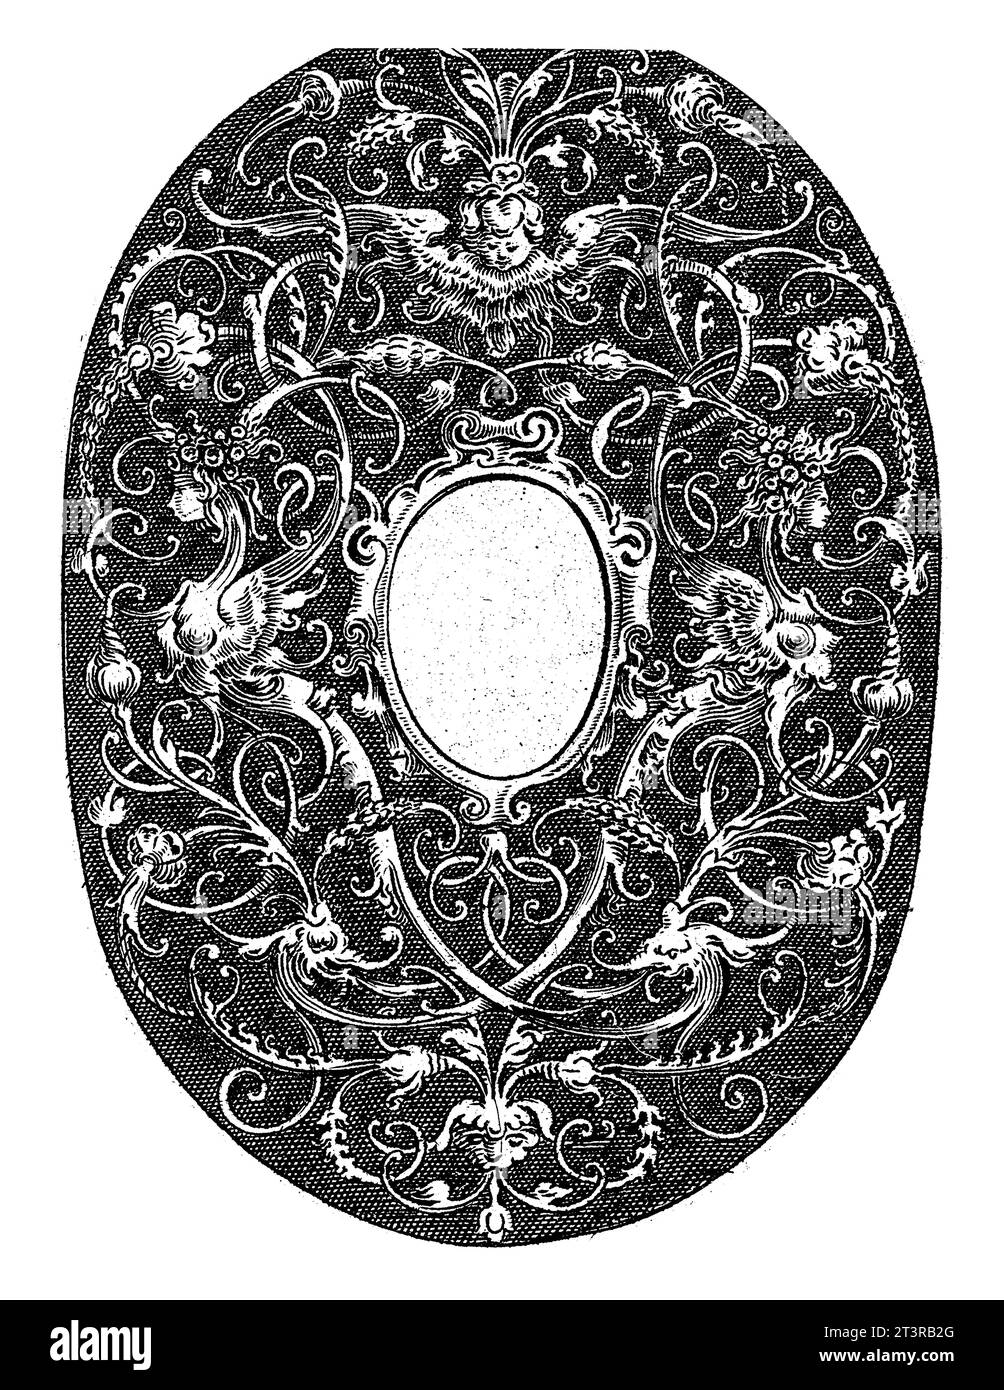 Ovale avec des vrilles stylisées et un compartiment vide au milieu, Hans Janssen, 1615 - c. 1630 deux sphinx et un chérubin sont incorporés dans les dix Banque D'Images